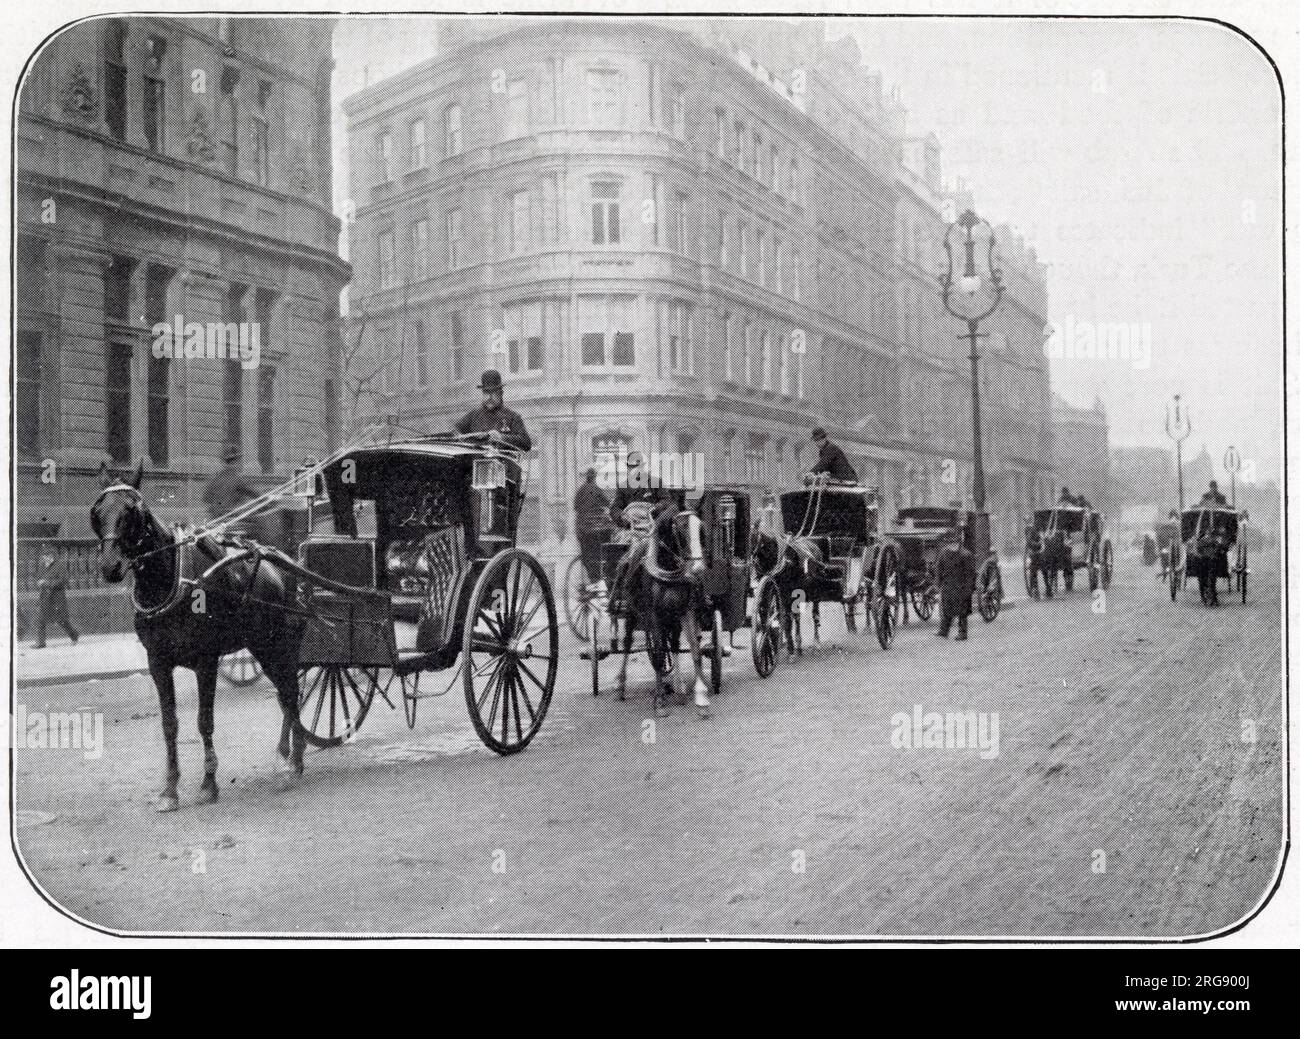 Ein Taxistand im Zentrum von London - eine Mischung aus Hansoms (Zweirad) und victorias (Vierrad). Stockfoto